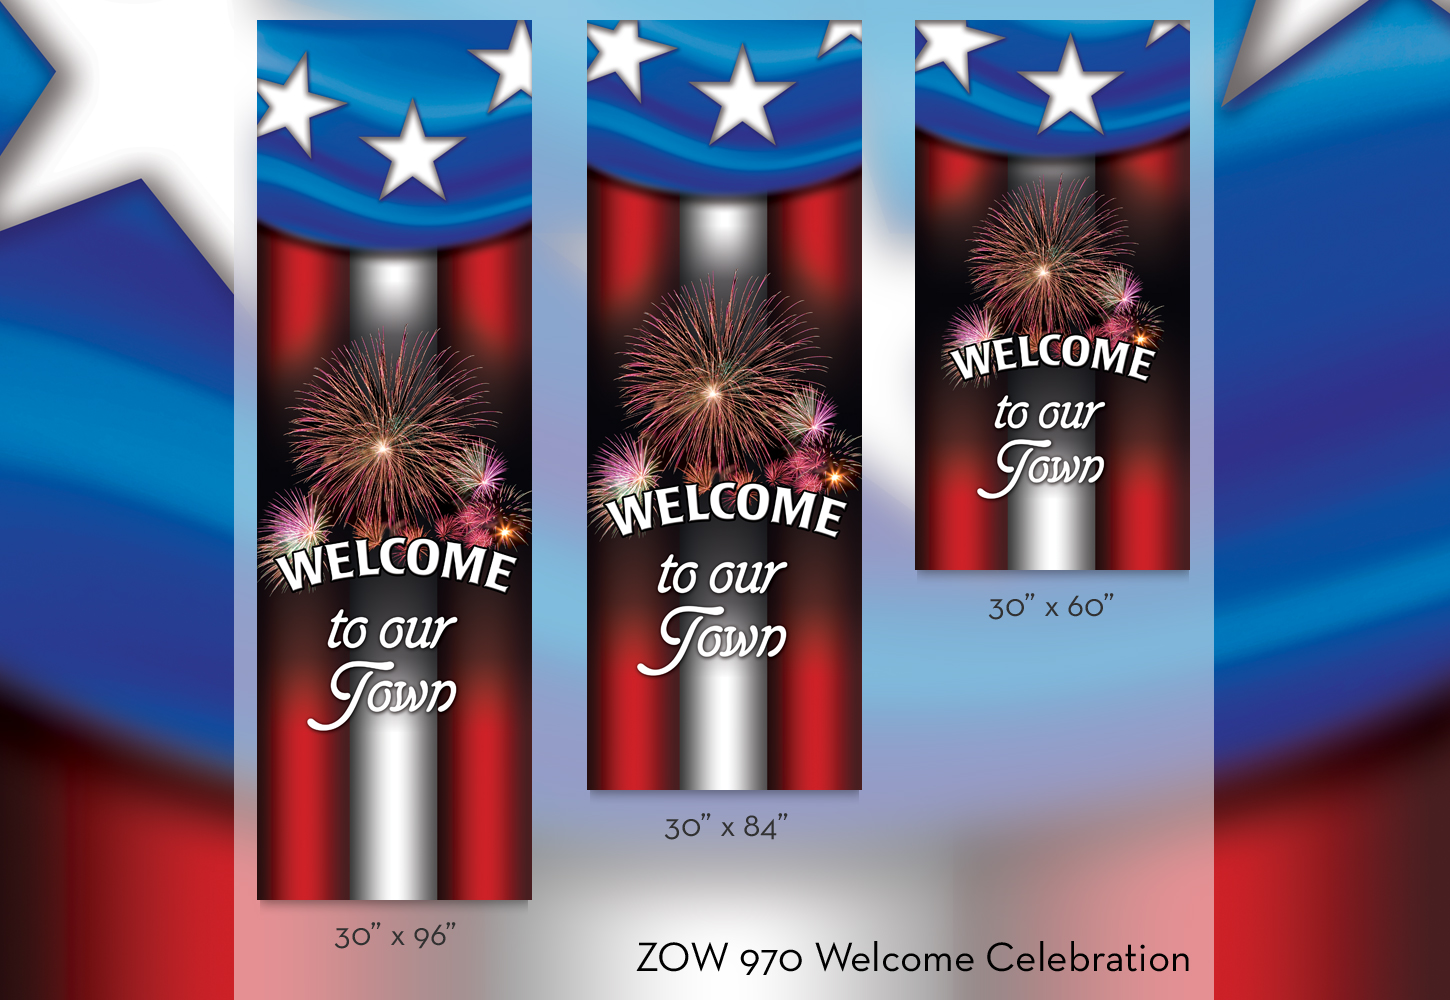 ZOW 970 Welcome Celebration